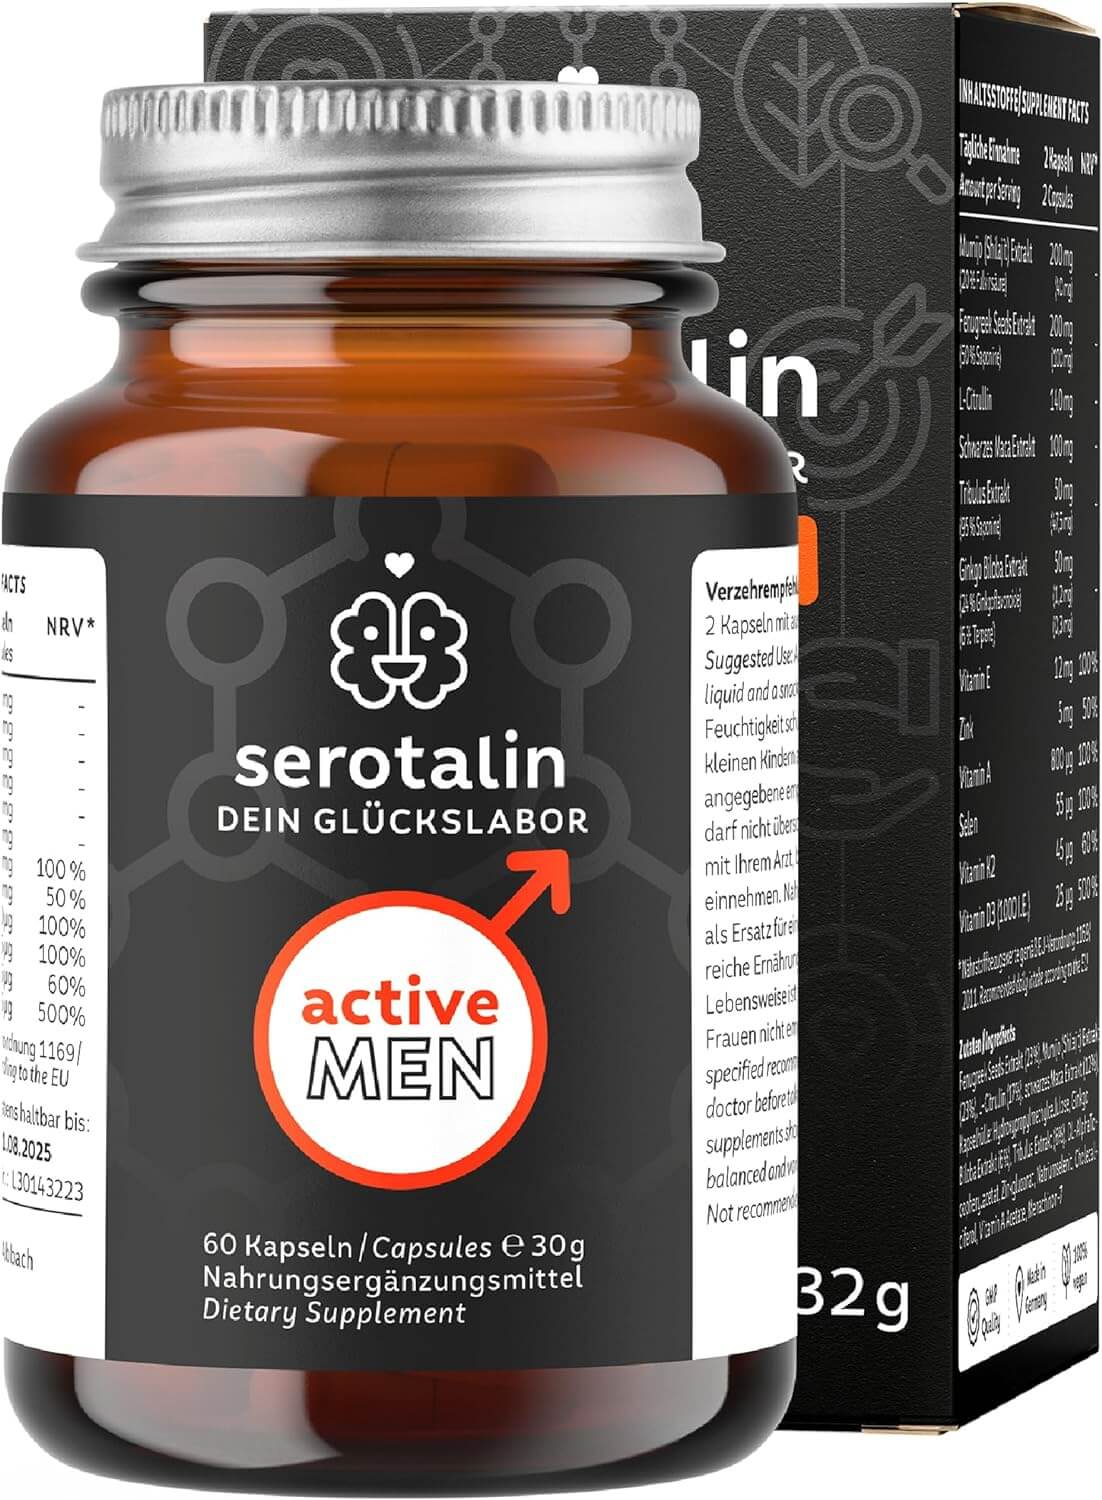 Serotalin Active Men | 60 Kapseln | Natürliche Wirkstoffe für aktive Männer